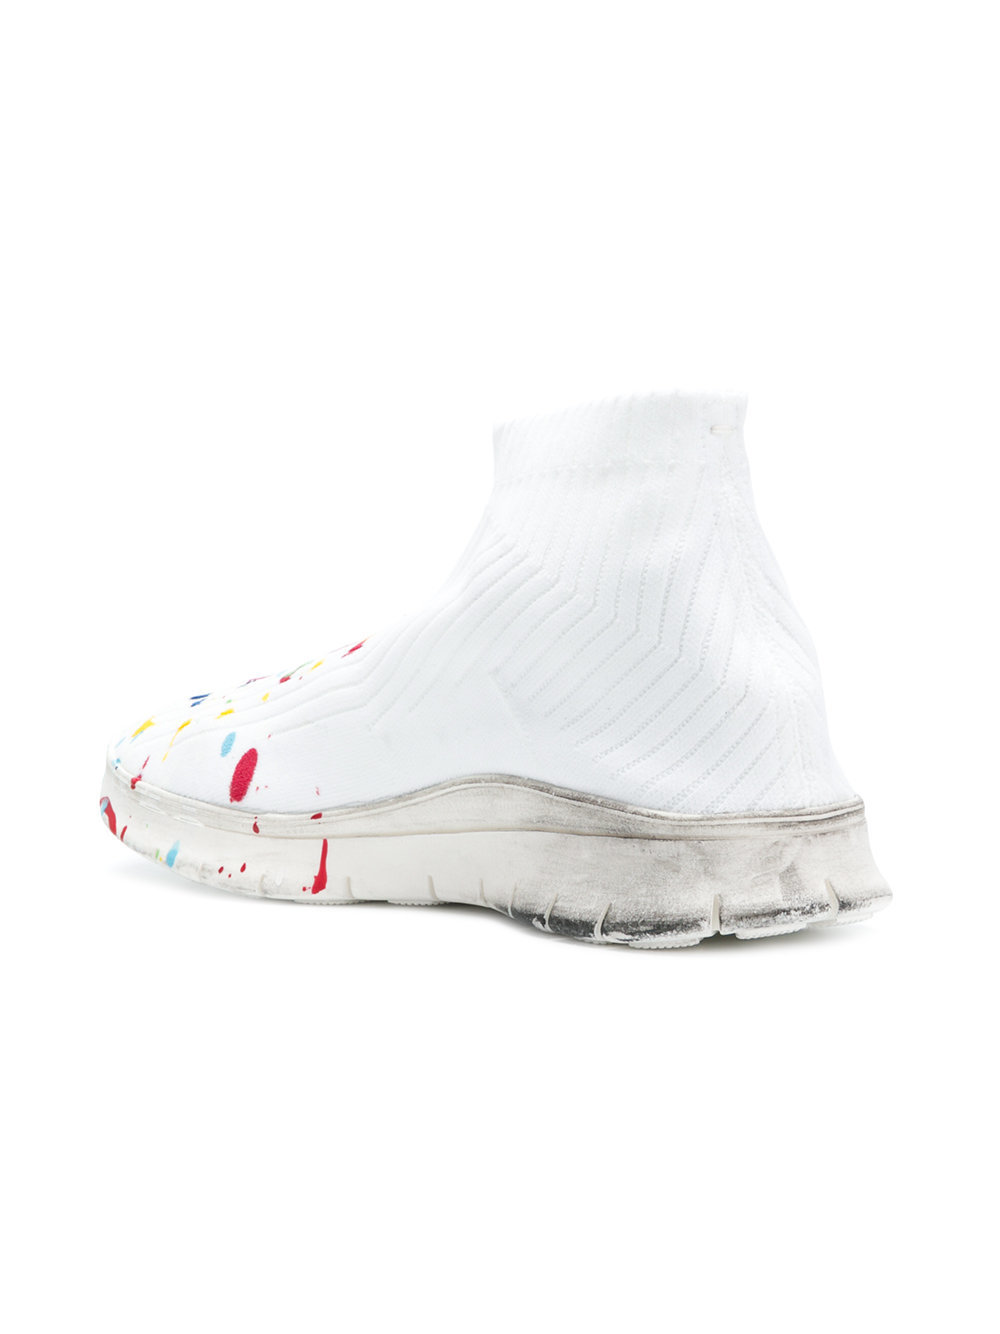 Splatter 3 Color Low Top White Sneaker — SOPHDAWG